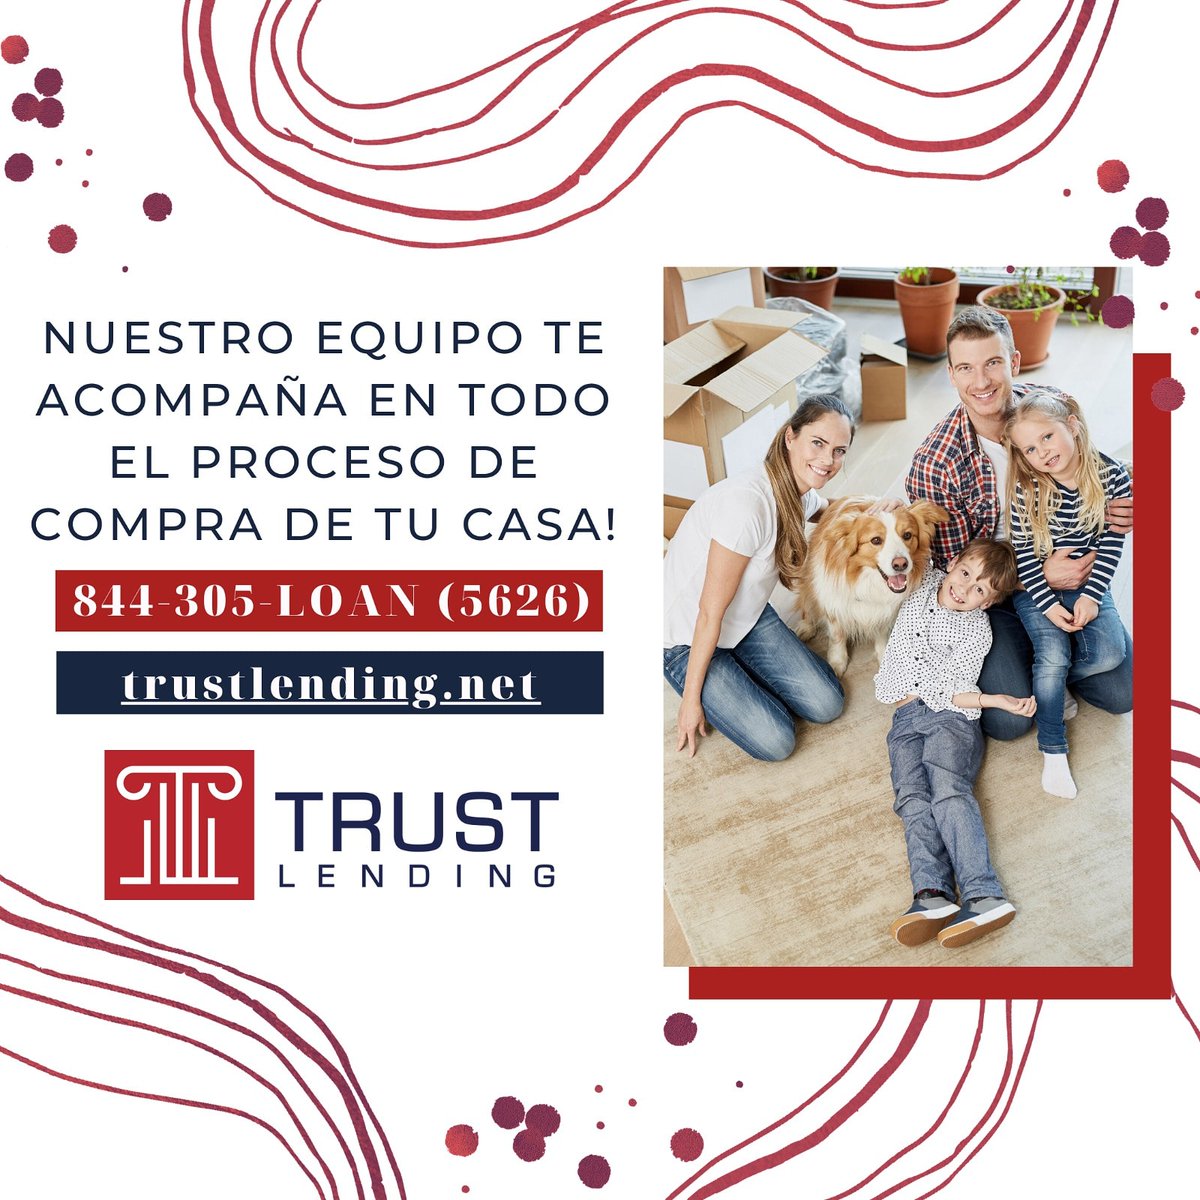 Es una cuestión de confianza, y usted está en manos confiables 🏡🔑🤩🤲
¡Nuestro equipo de expertos está aquí para ayudarte!
😊🤝😍
#TrustLending #TrustedHands
.
.
.
👇⠀⠀⠀⠀⠀⠀⠀
☎️ 844.305.LOAN
trustlending.net
.
#realestate #TrustHomeLoan